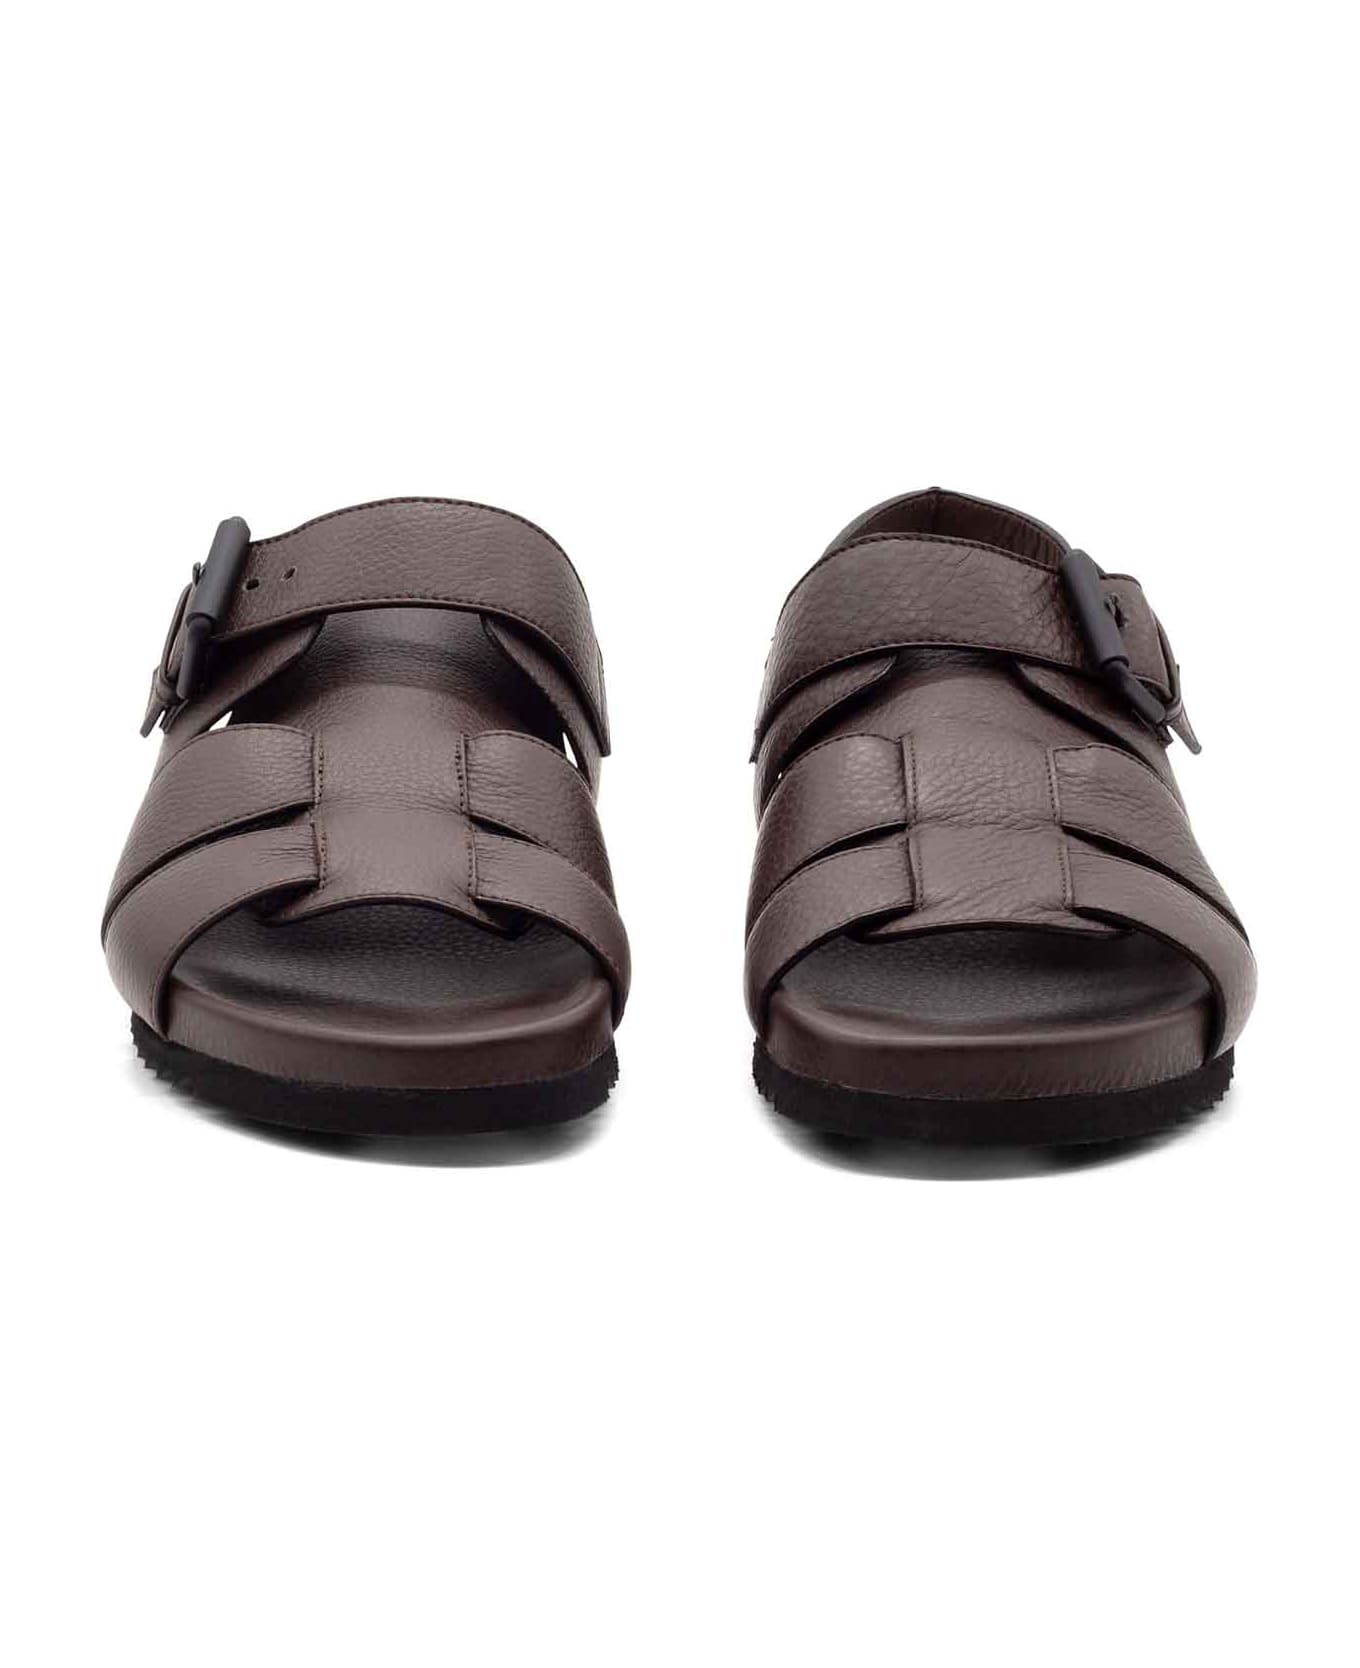 Vic Matié Men's Brown Leather Sandal - DARK BROWN